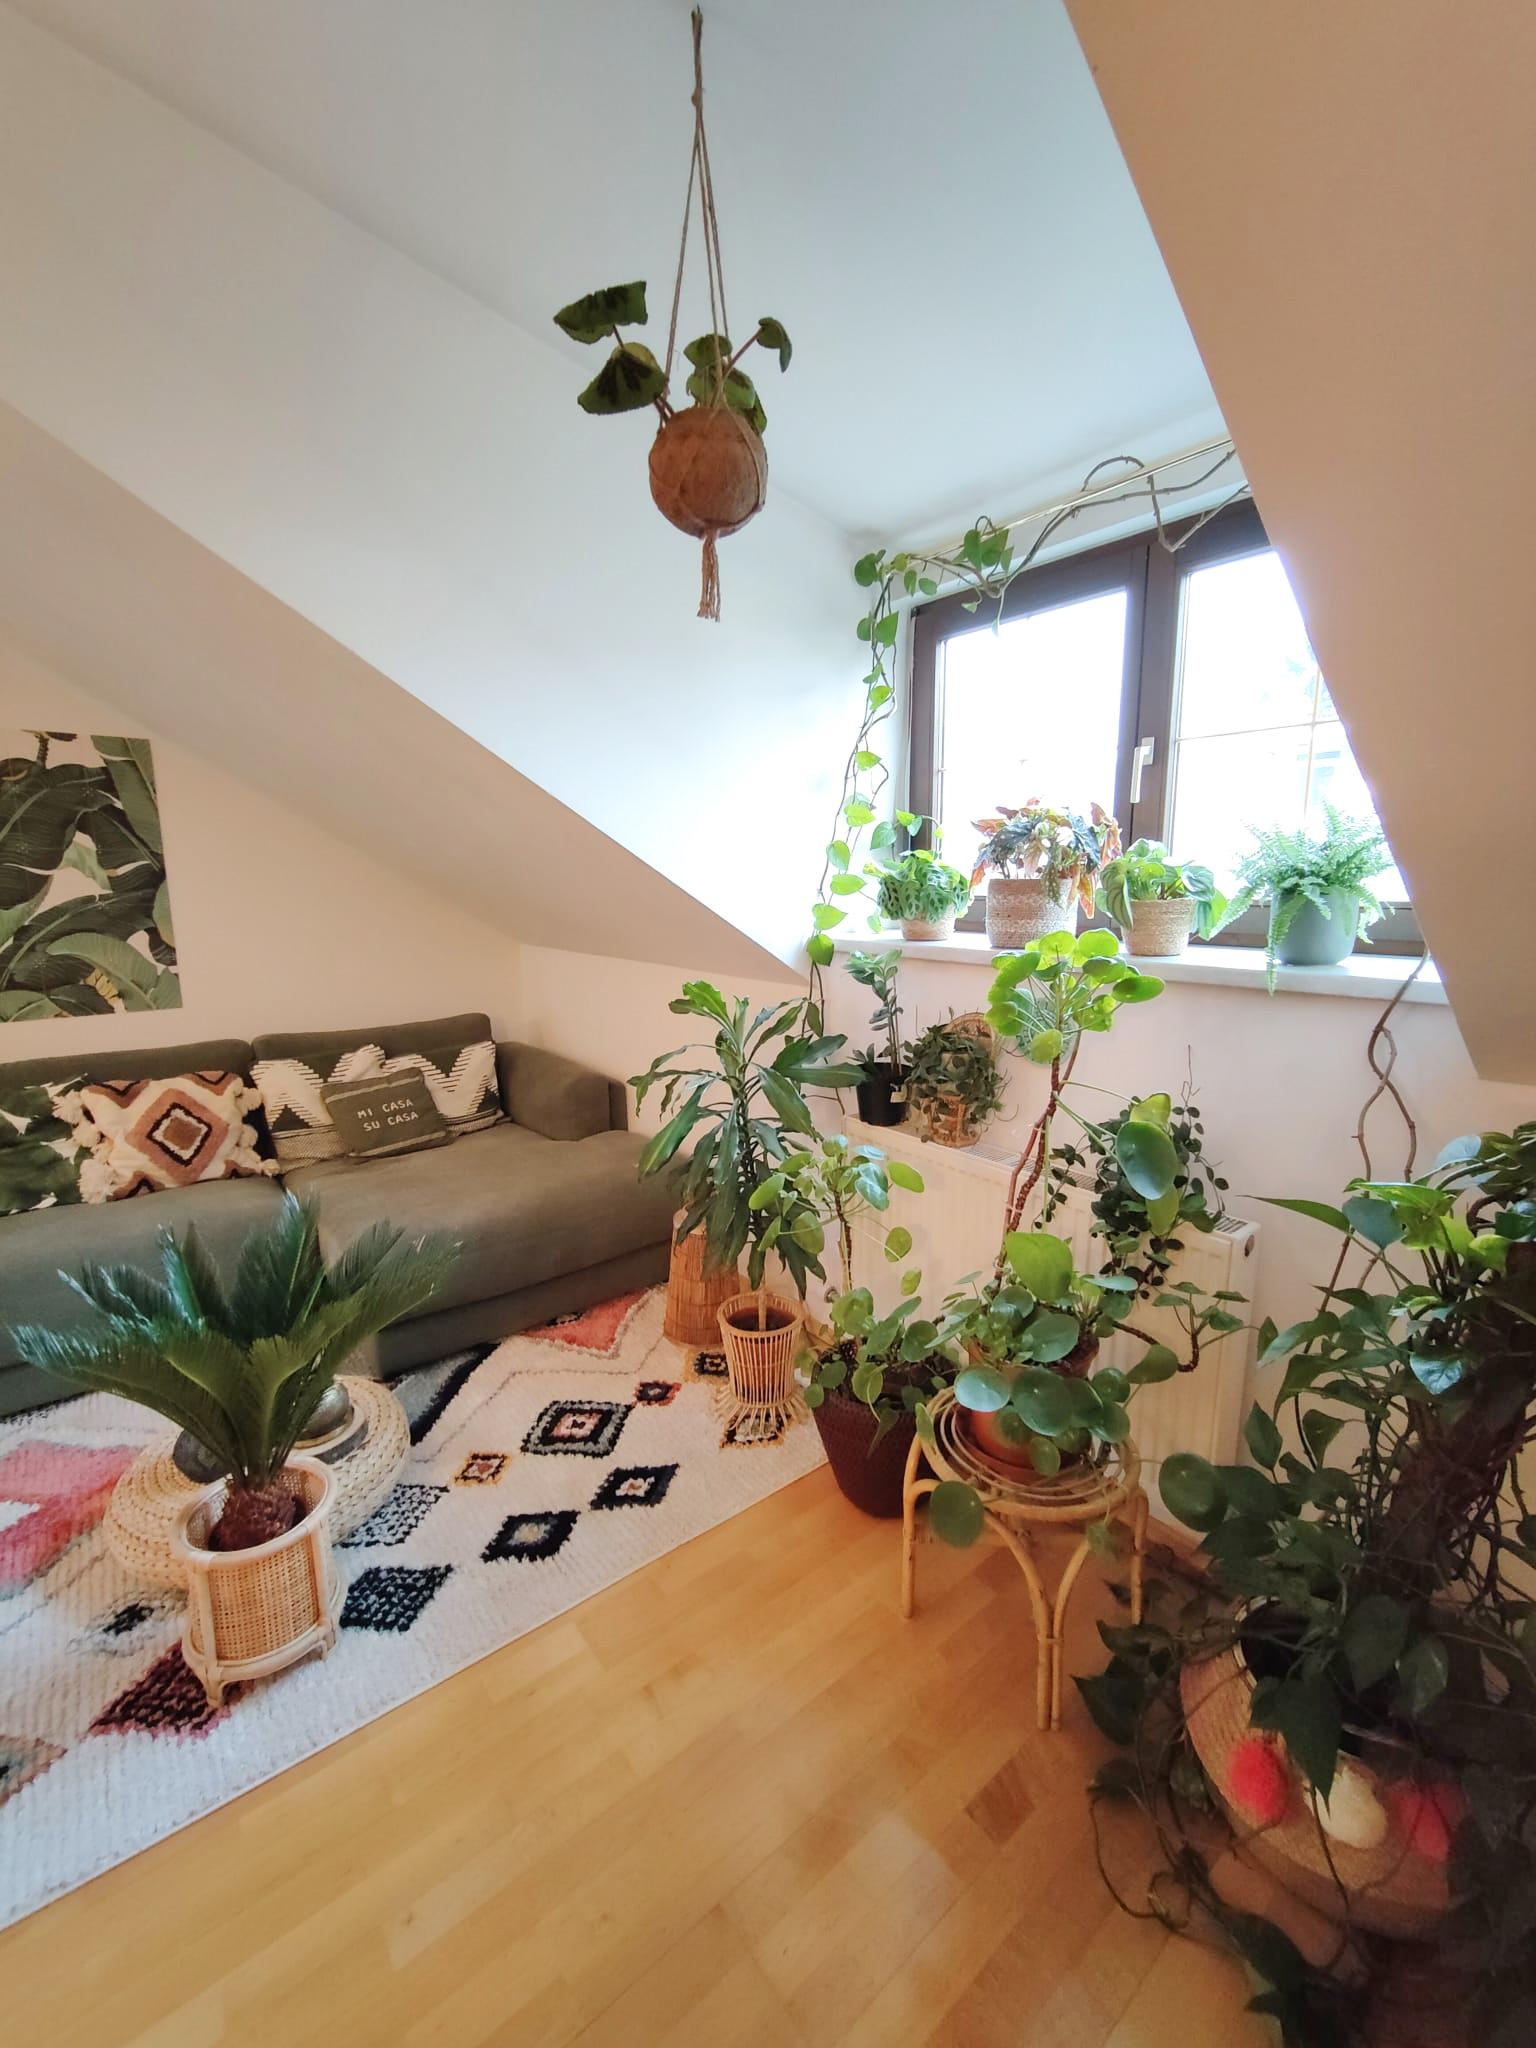 Frühlingsgefühle 🪴🌱 #houseplants #plants #livingroom